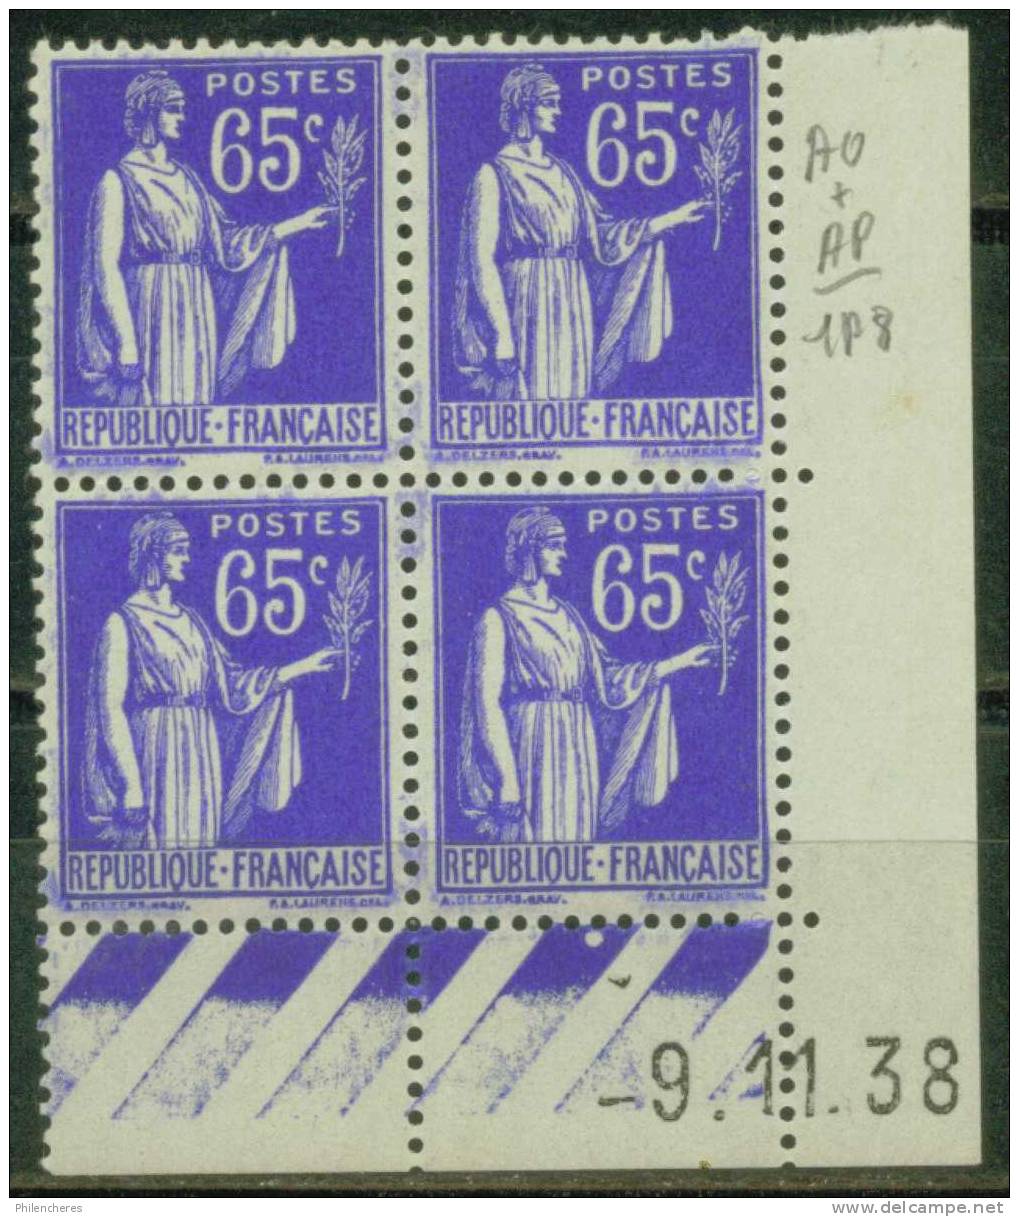 France Bloc De 4 - Coin Daté 1938 - Yvert N° 365 X - Cote 6 Euros - Prix De Départ 2 Euros - 1930-1939